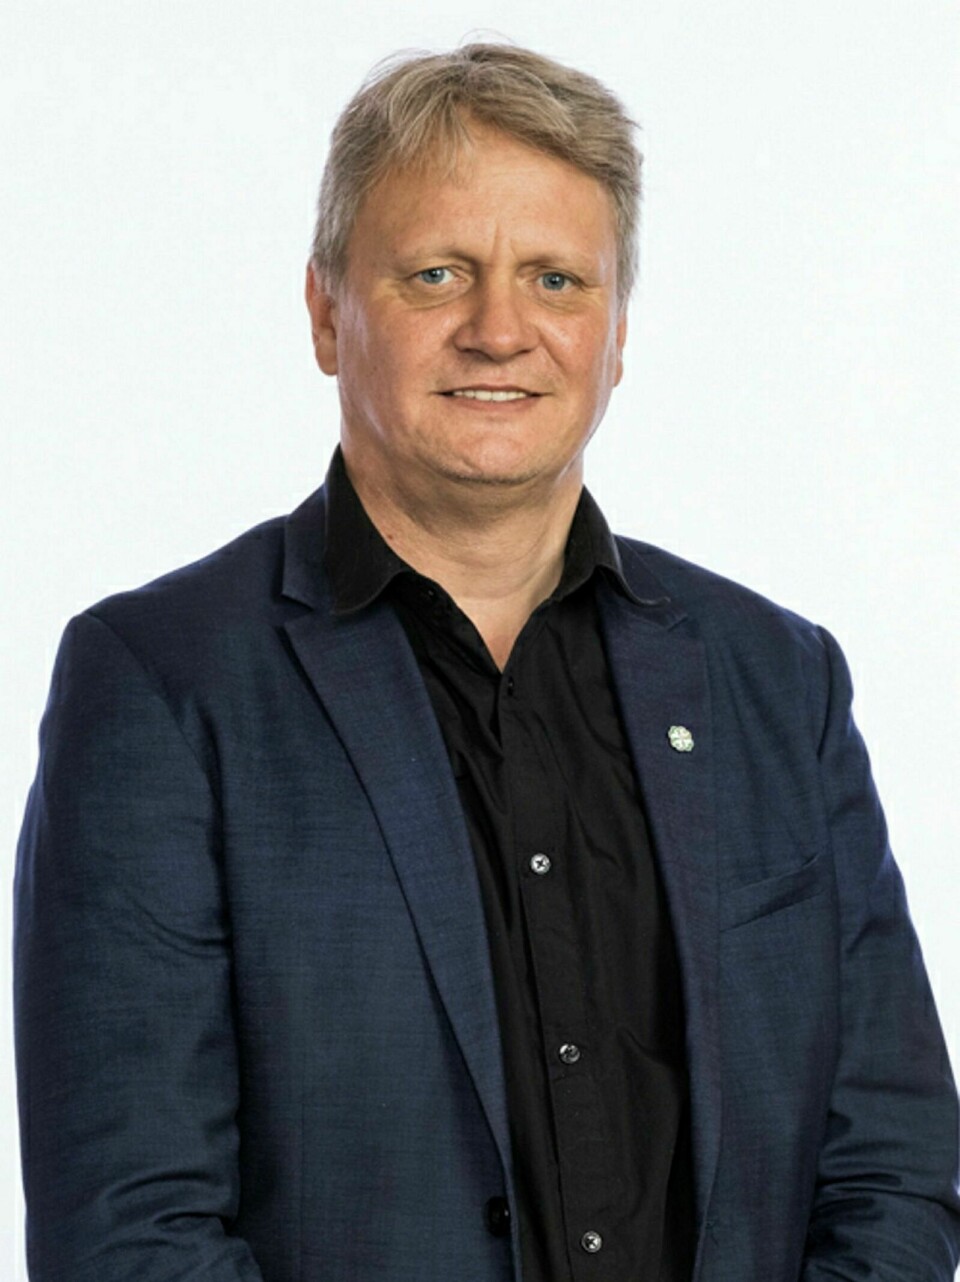 PÅ TINGET: Ivar B. Prestbakmo, stortingsrepresentant for Senterpartiet, medlem av justiskomiteen. Foto: Stortinget